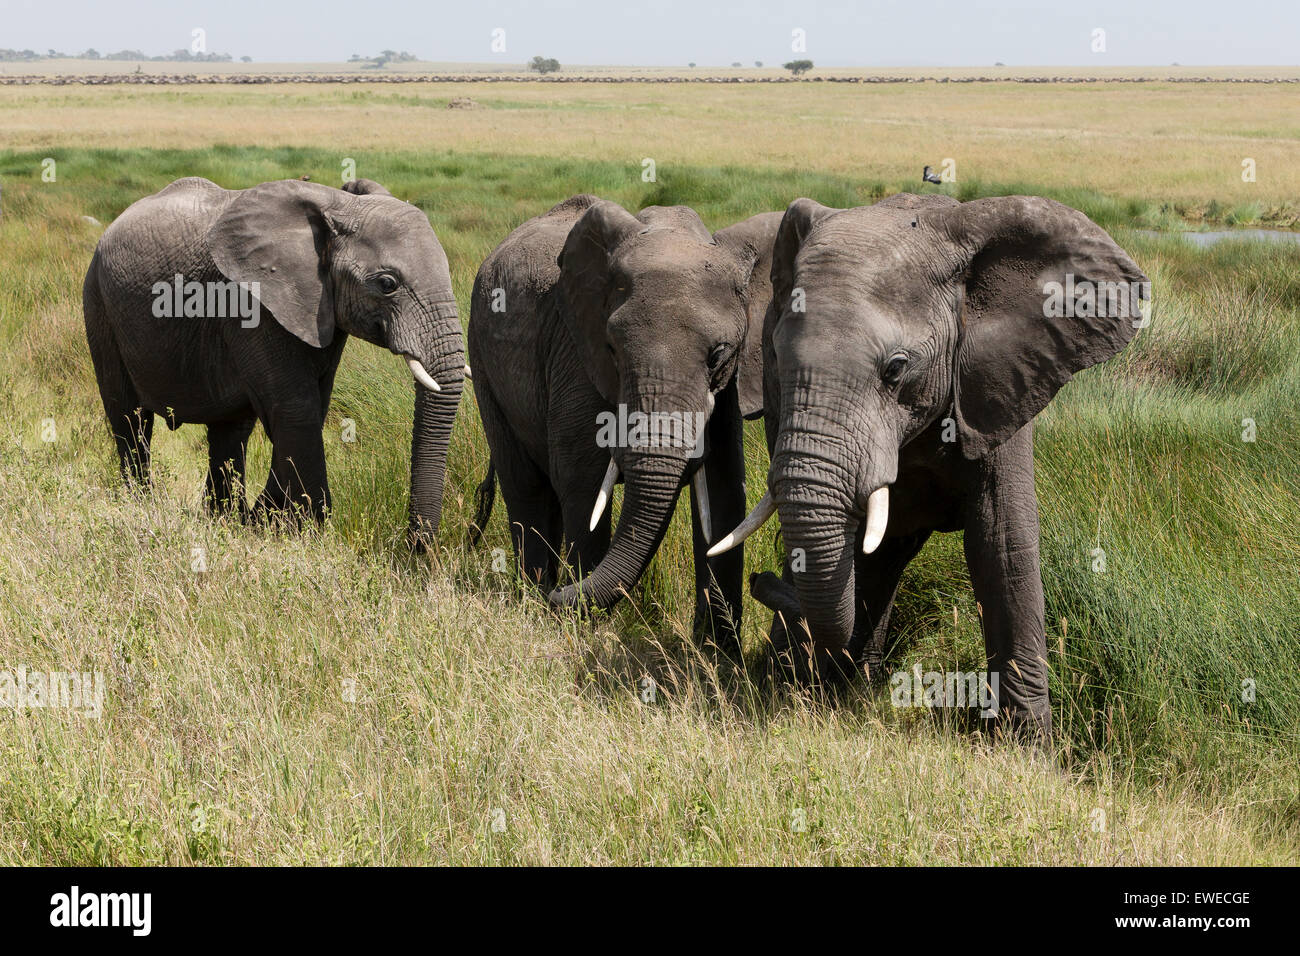 Young elephants (Loxodonta africana) in the Serengeti Tanzania Stock Photo